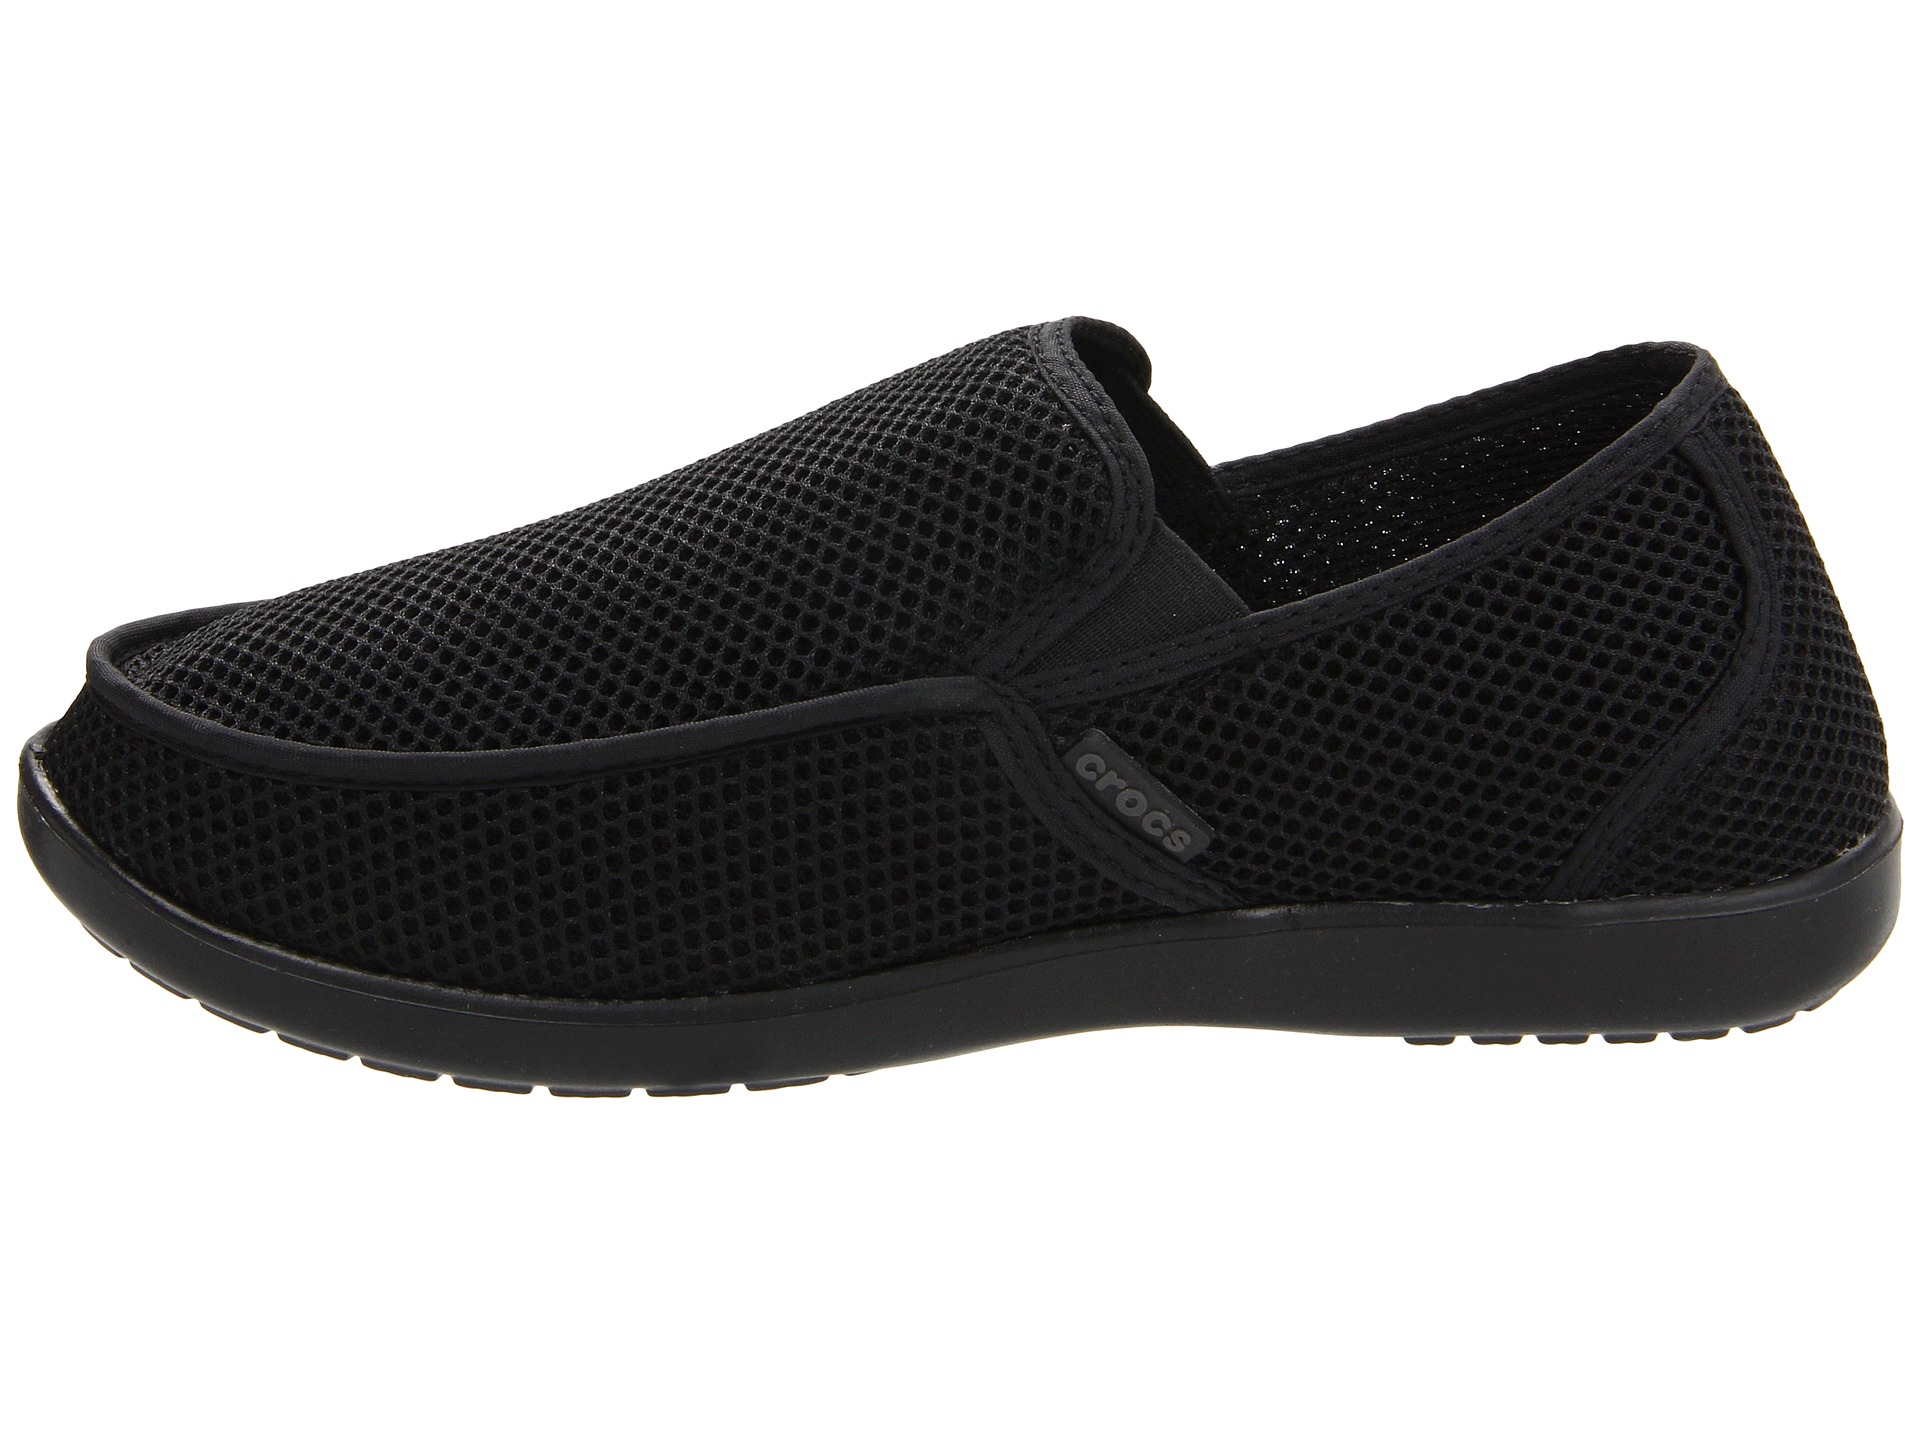 Crocs Santa Cruz Rx, Shoes | Shipped Free at Zappos